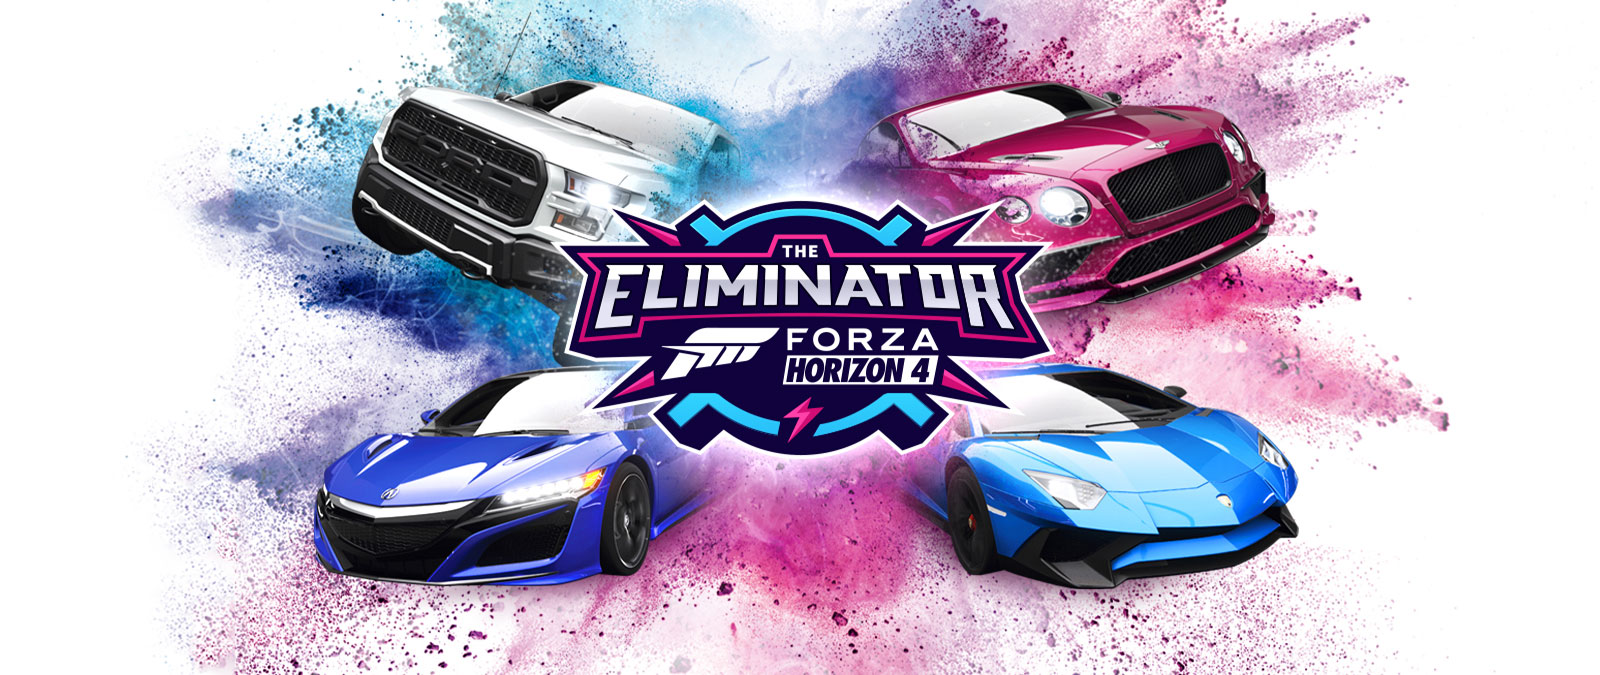 The Eliminator, Forza Horizon 4-logo, fire biler med blåt og pink støv omkring sig